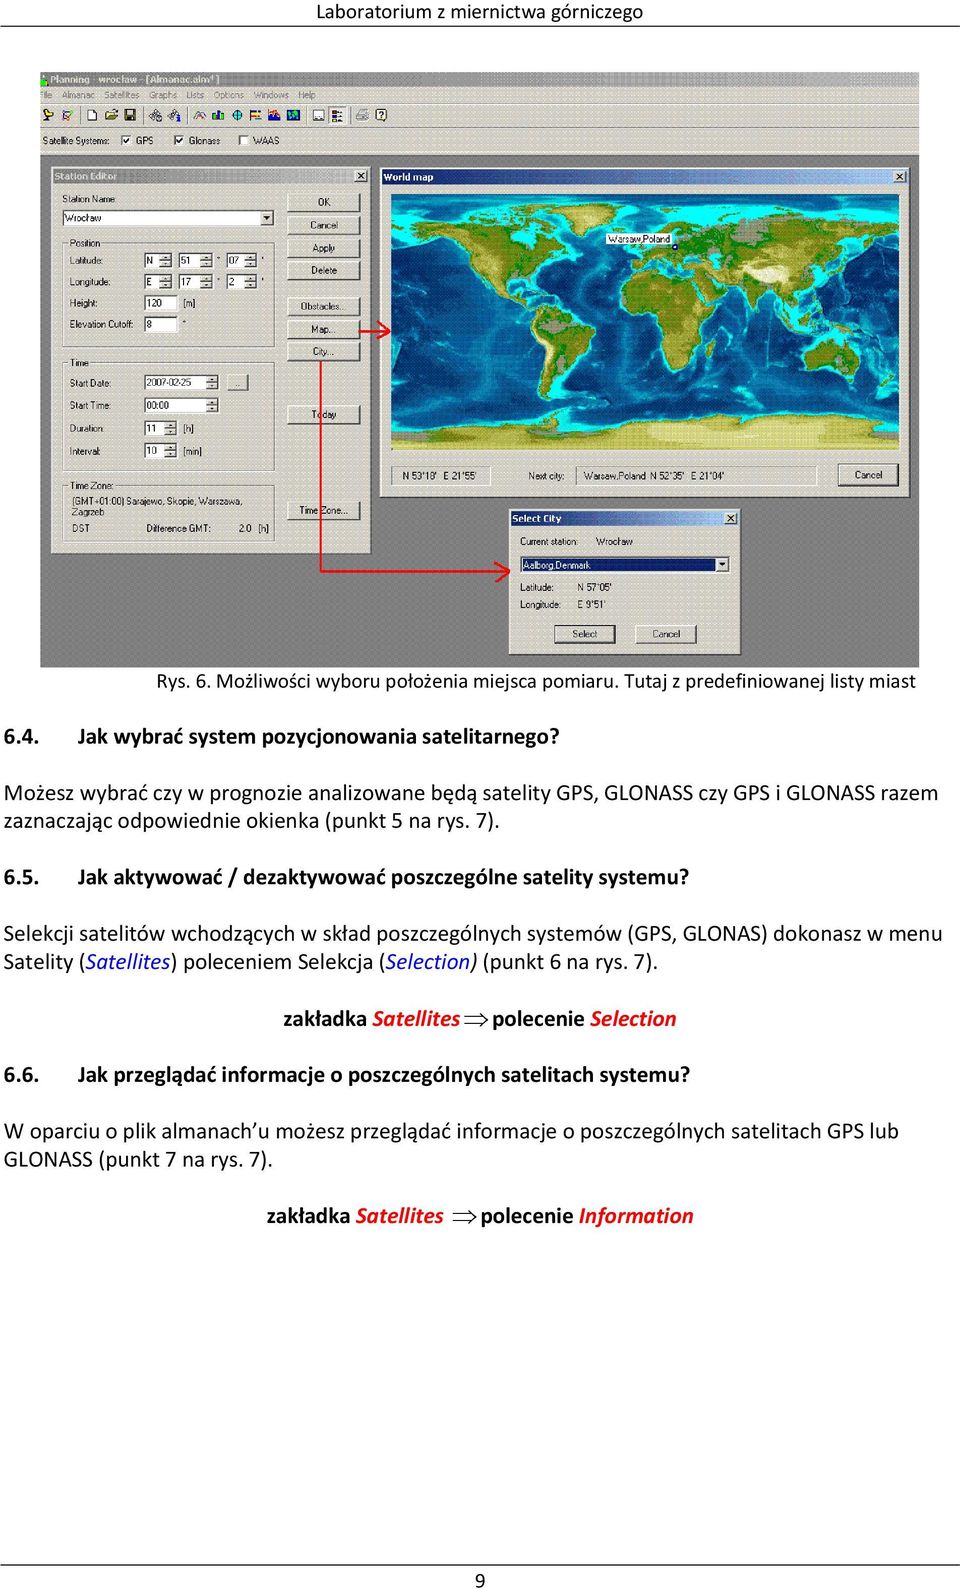 Selekcji satelitów wchodzących w skład poszczególnych systemów (GPS, GLONAS) dokonasz w menu Satelity (Satellites) poleceniem Selekcja (Selection) (punkt 6 na rys. 7).